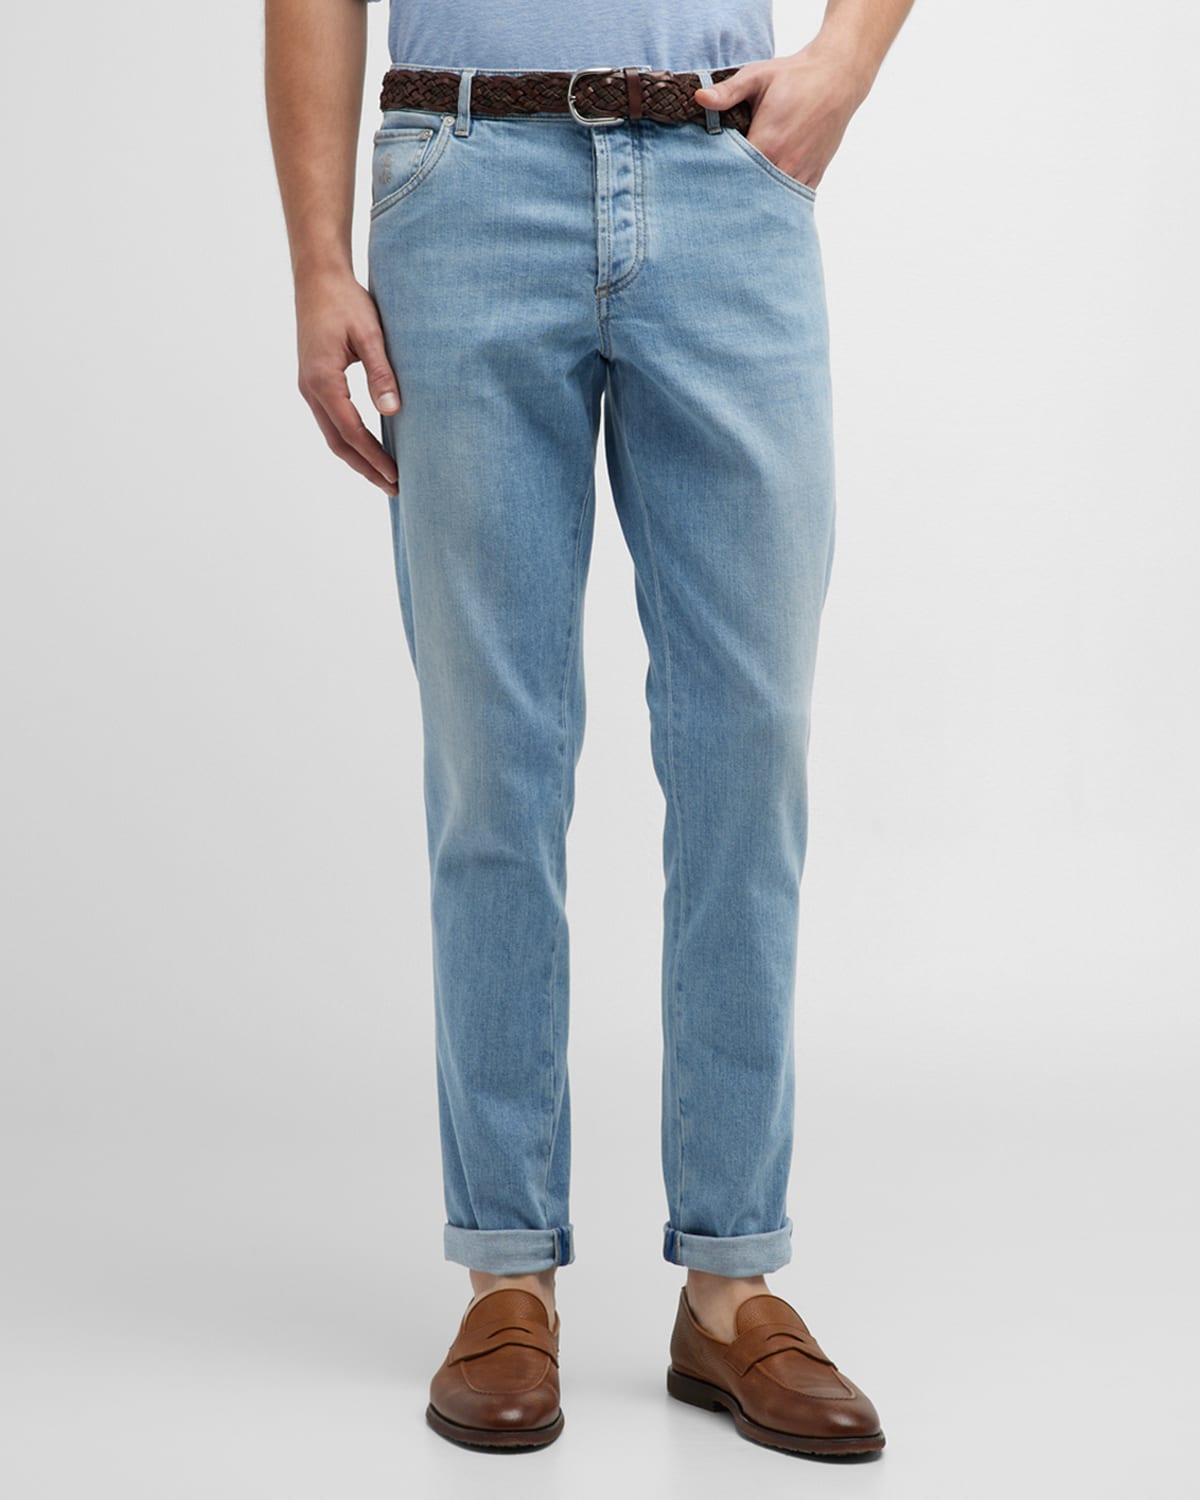 Men's Light-Wash Stretch Denim 5-Pocket Jeans